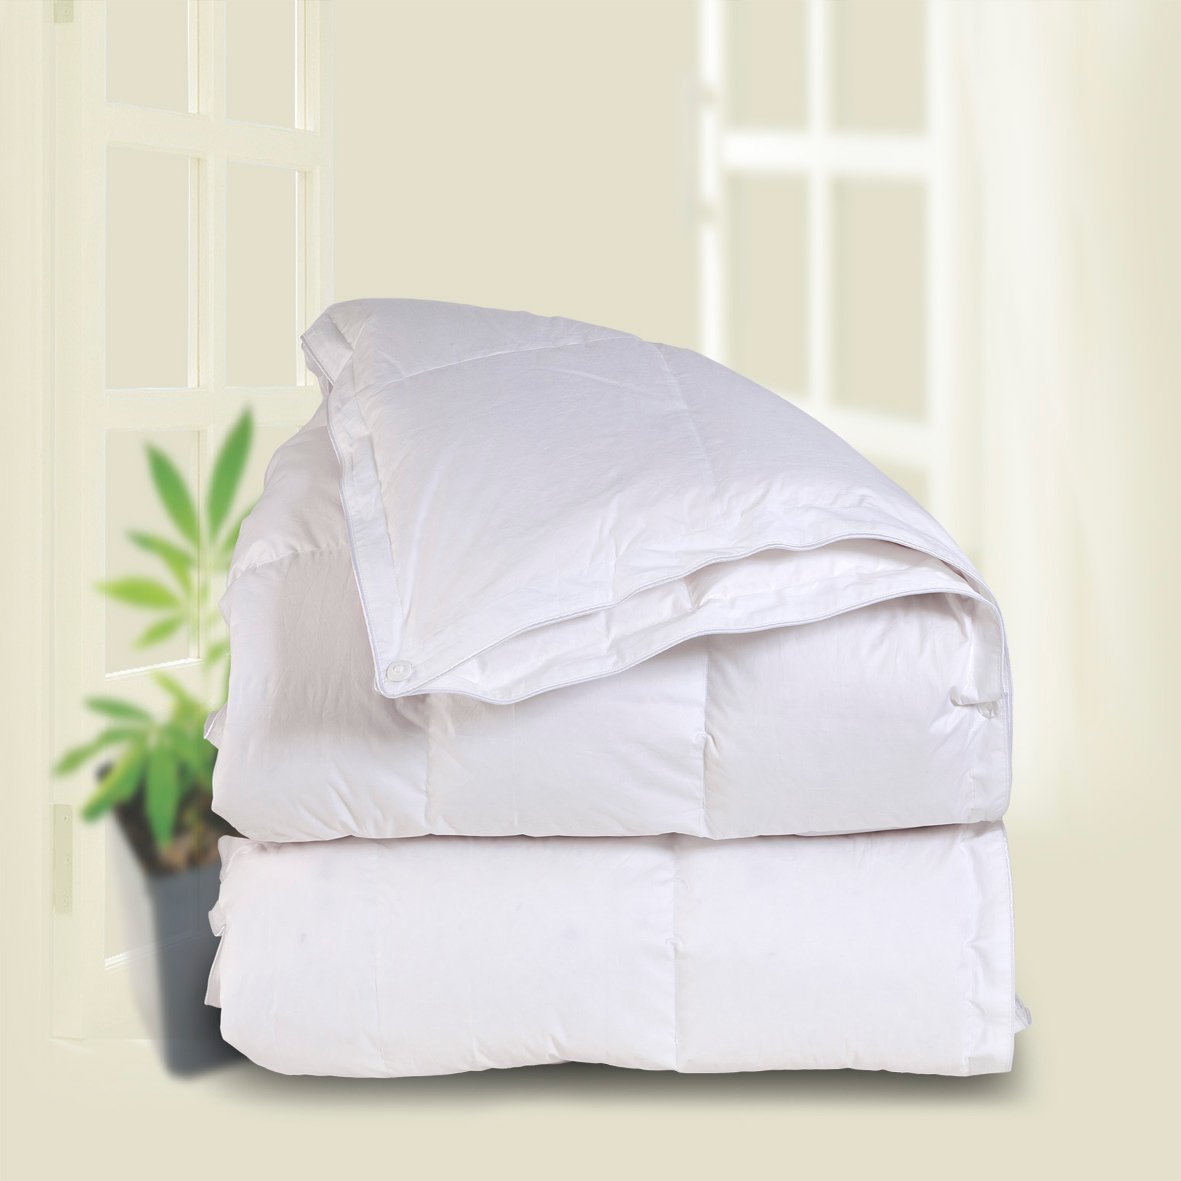 C&W White Goose Down Comforter King Size Duvet Insert, Down Duvet